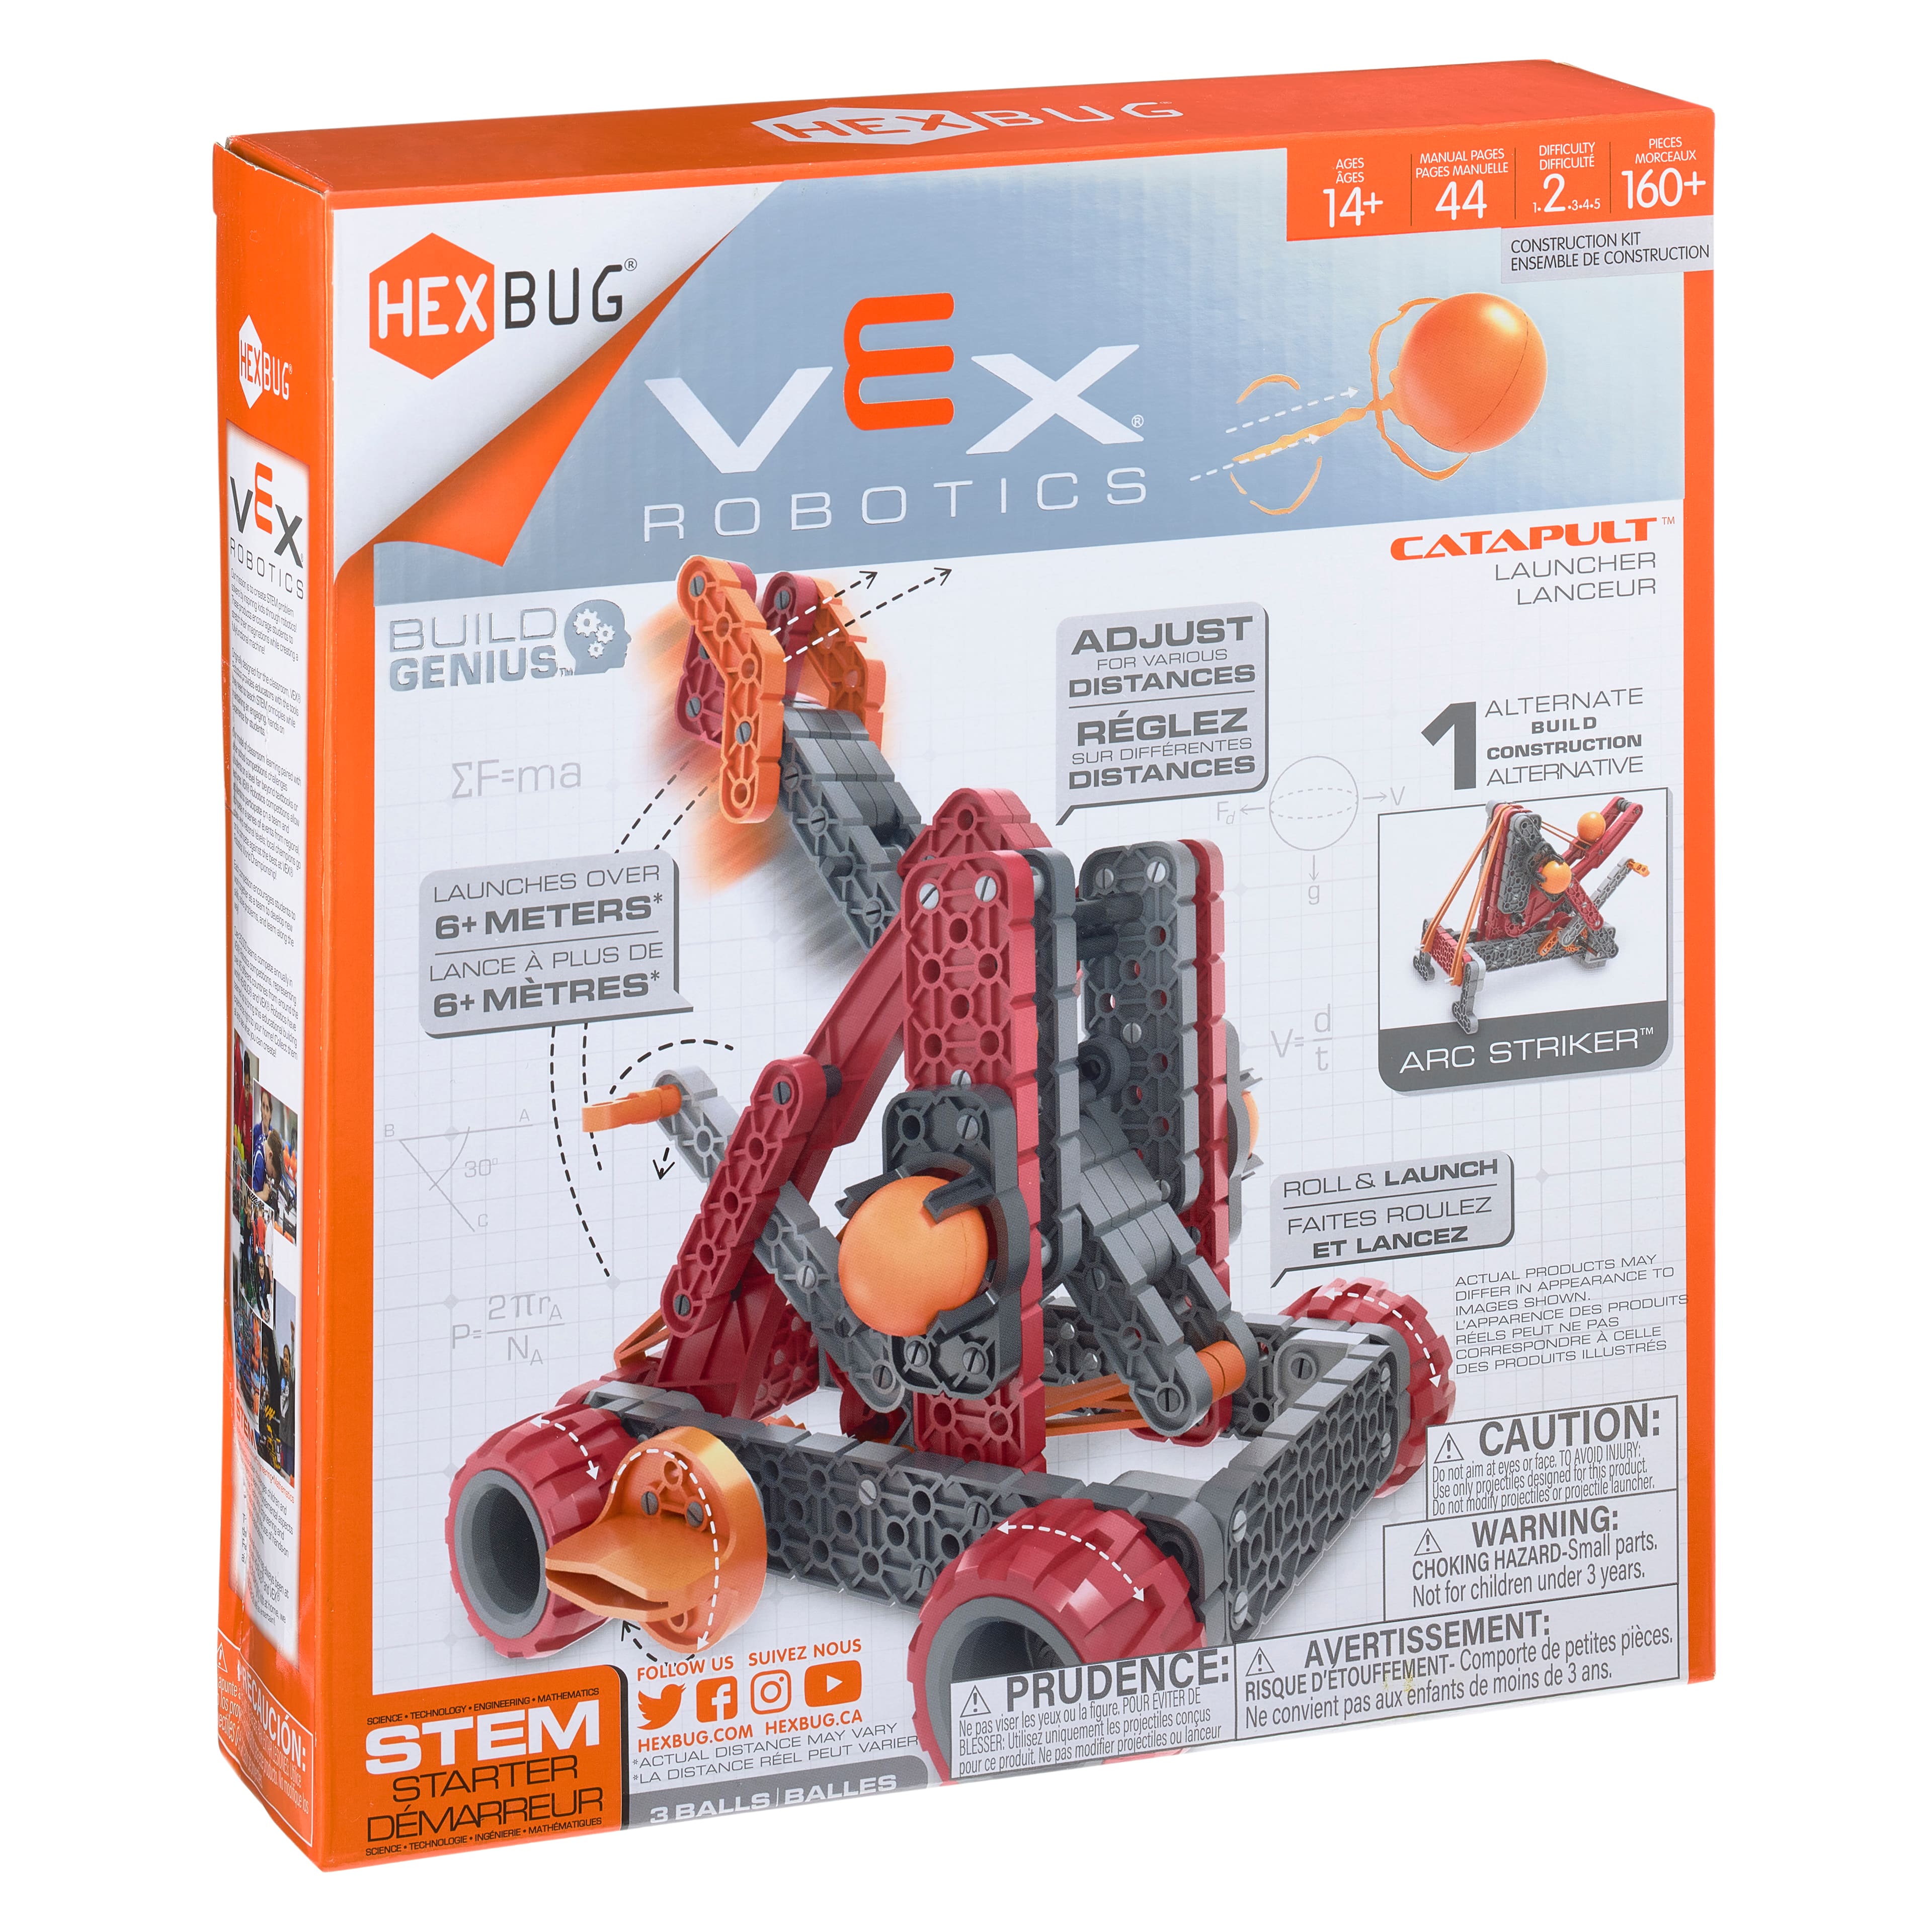 Hexbug&#xAE; Vex&#xAE; Robotics Catapult&#x2122; 2.0